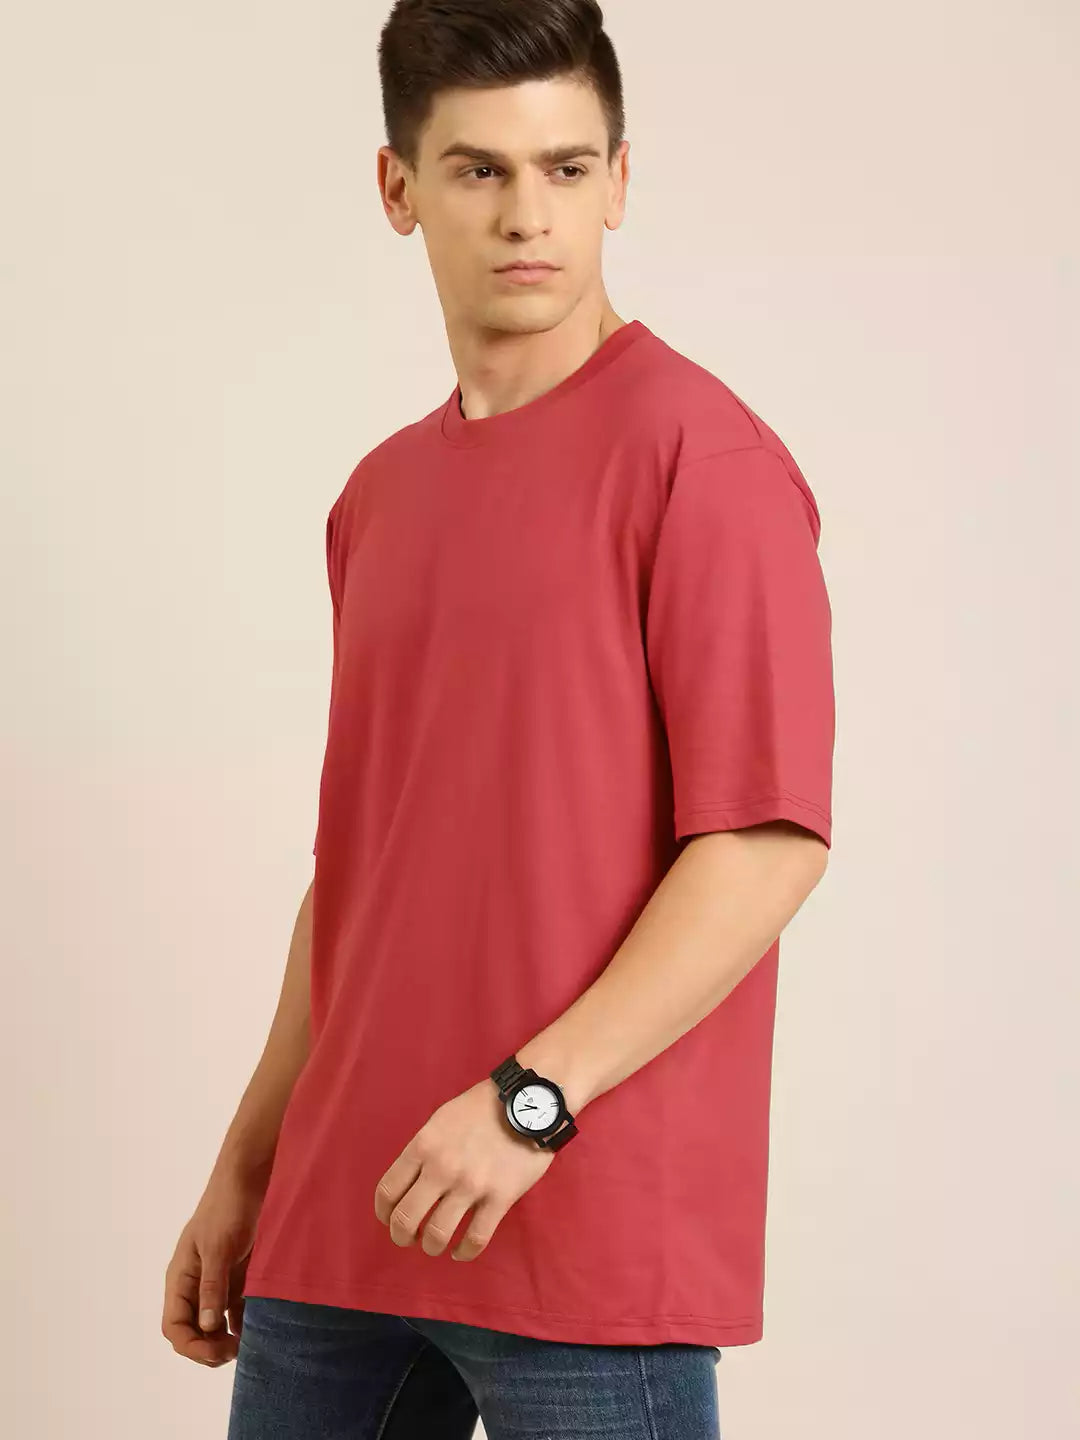 Red Color Men's Cotton T-Shirt Plain Half Sleeve Round Neck